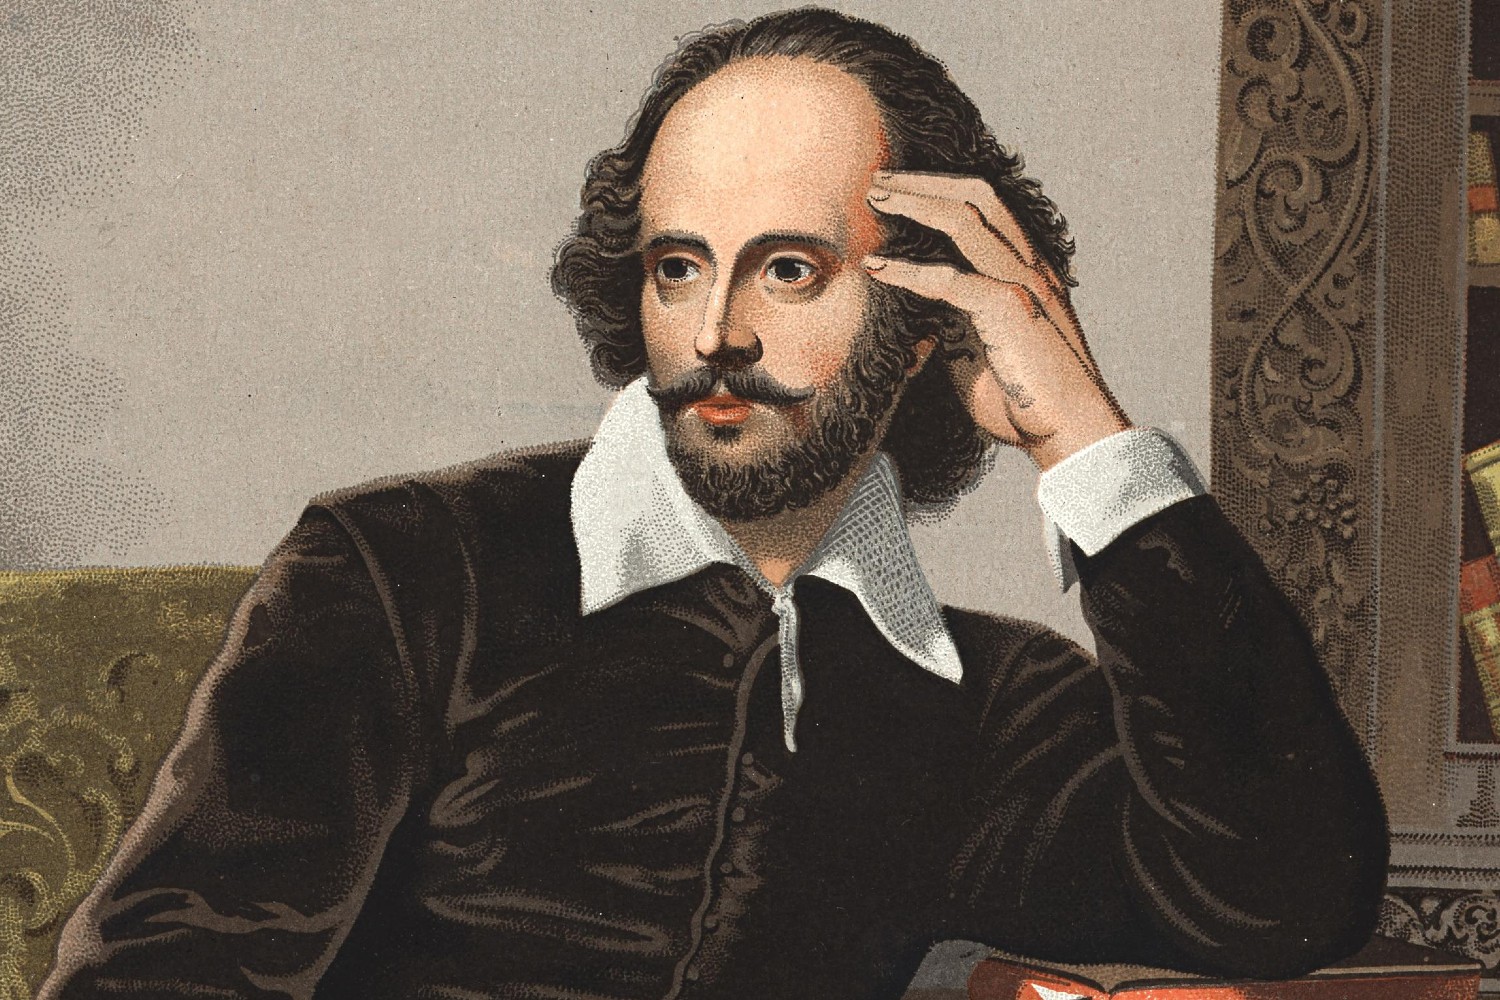 05.10.2007. – Да ли је Шекспир био варалица?*